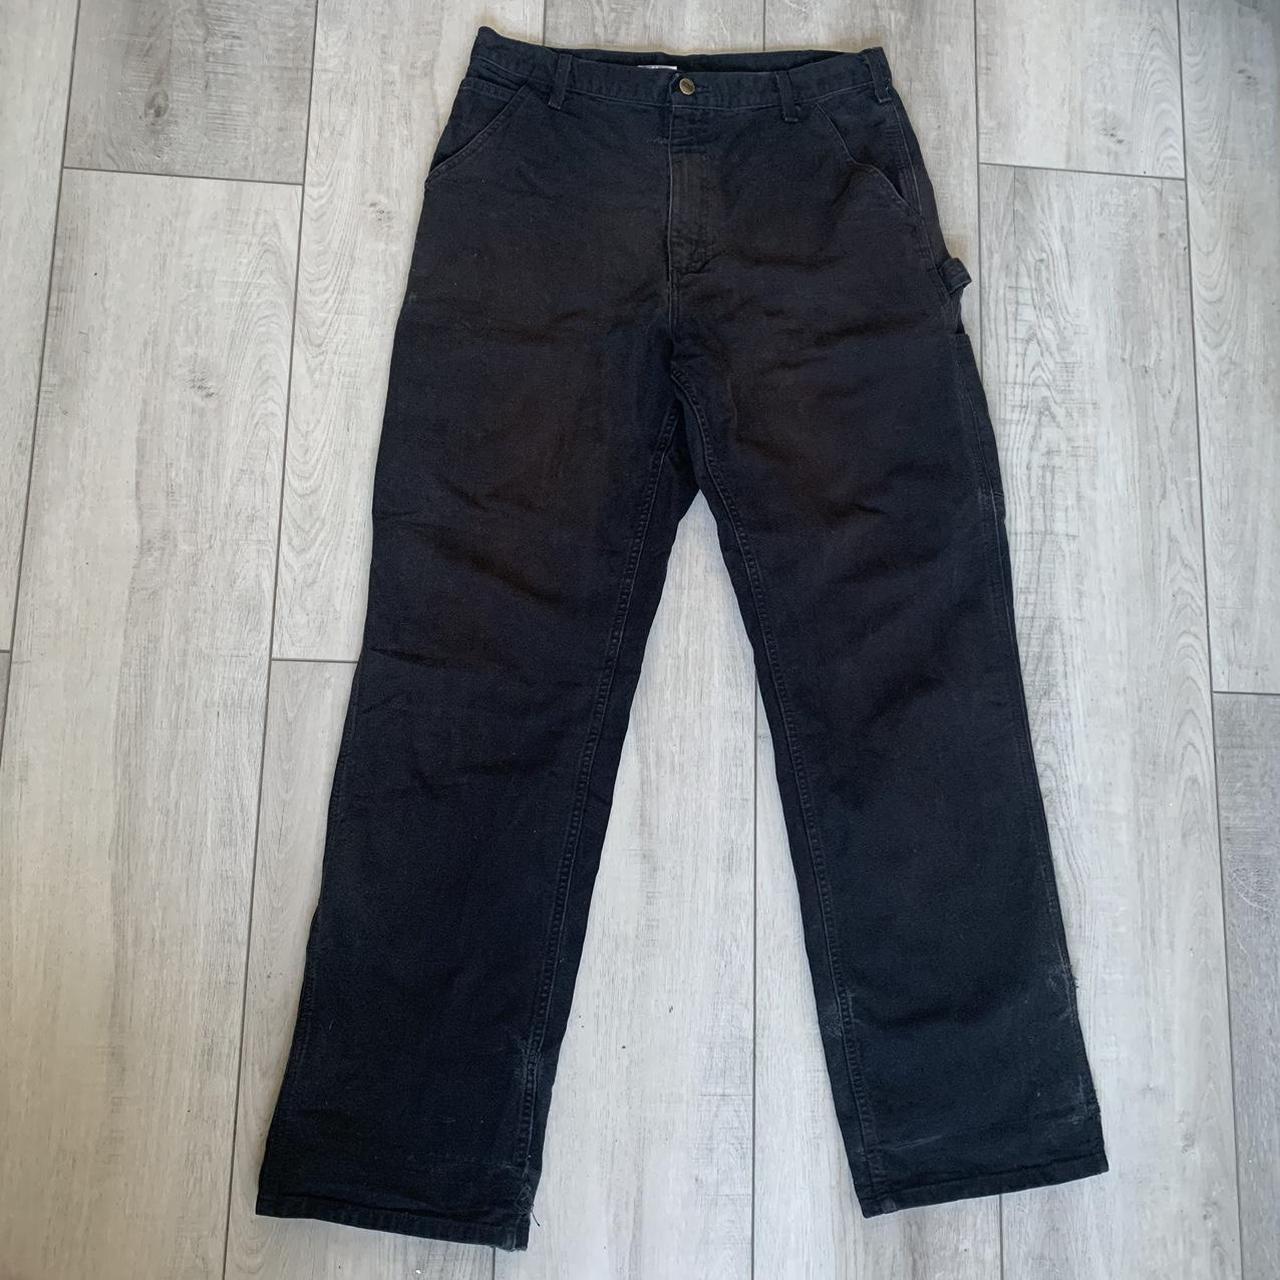 Carhartt reinforced black carpenter jeans size 34x34... - Depop